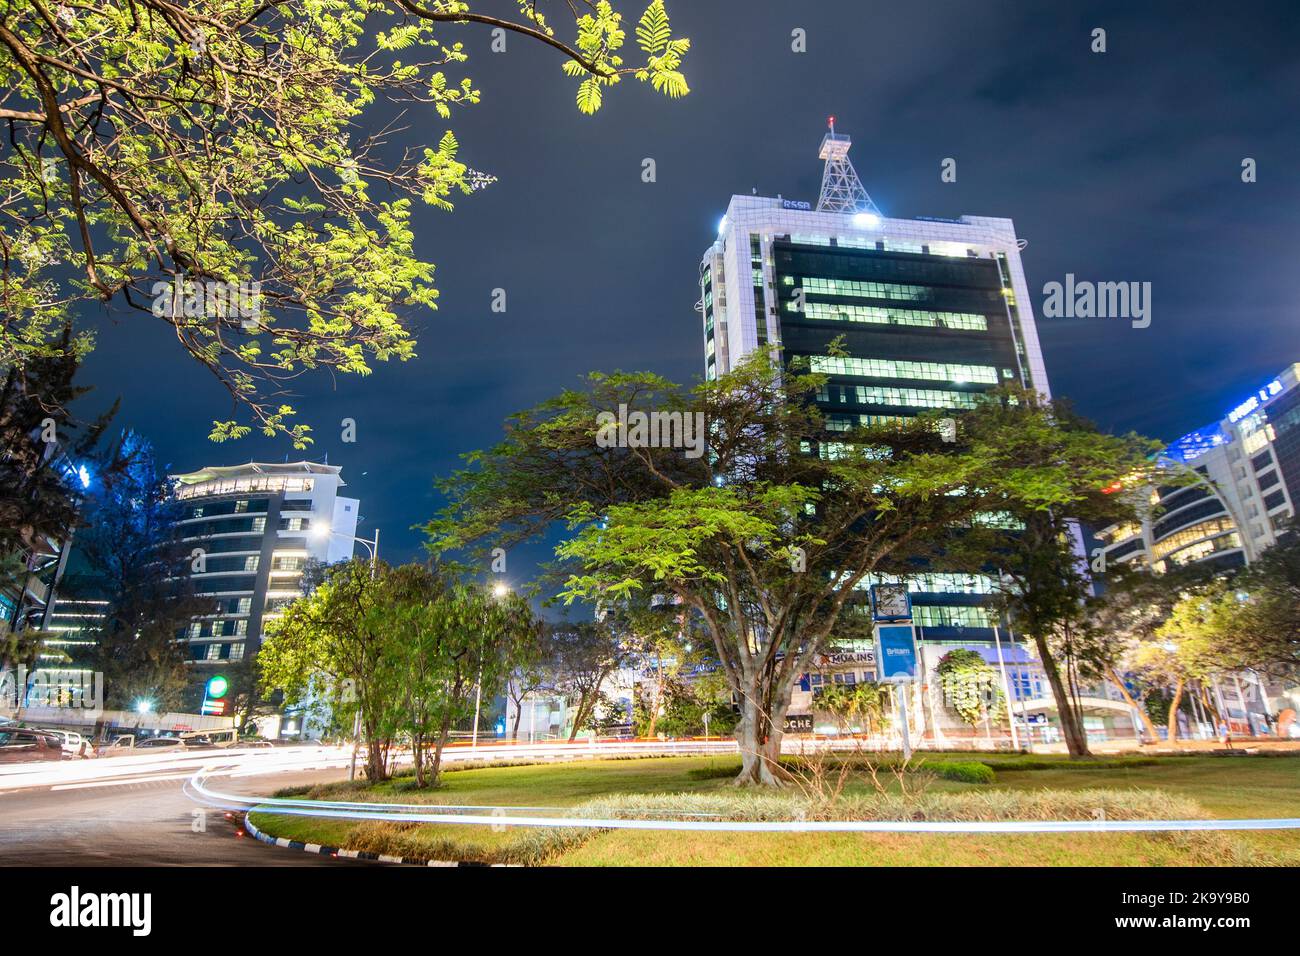 Kigali, Rwanda - 19 août 2022 : le centre-ville de Kigali s'illumine la nuit avec la place des pensions en vue. Banque D'Images